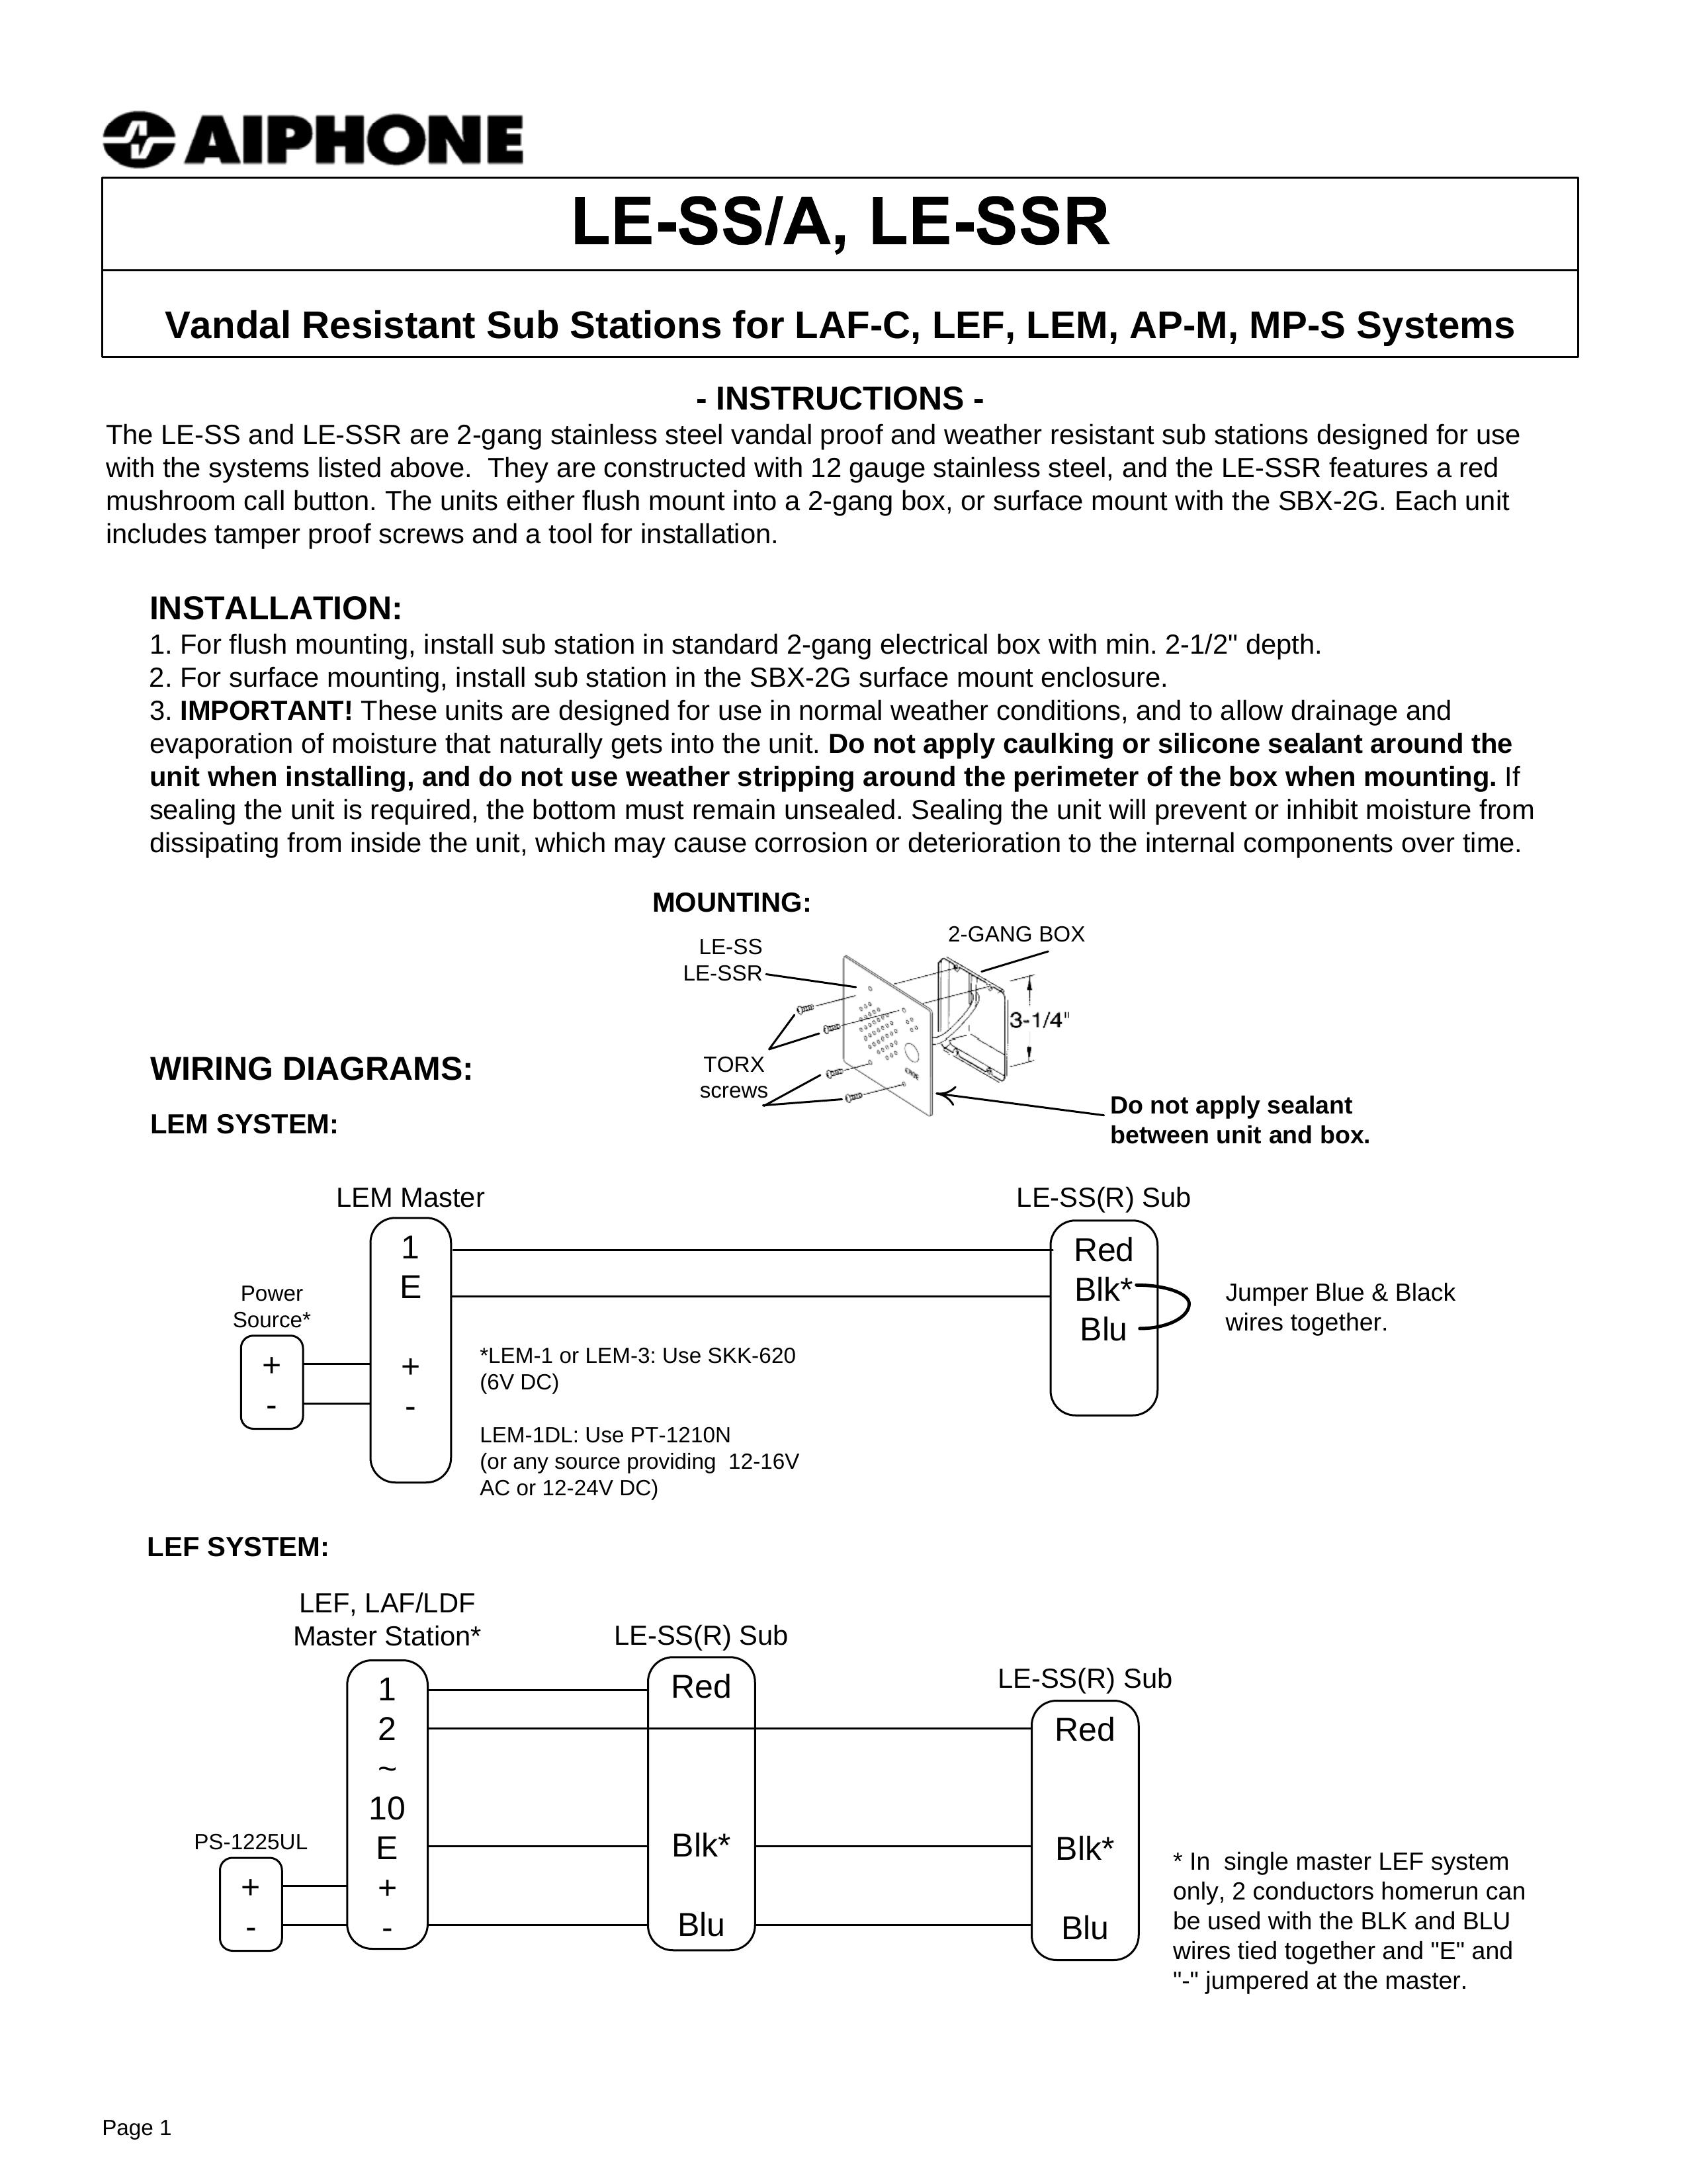 Aiphone LE-SS/LE-SSR Marine Radio User Manual